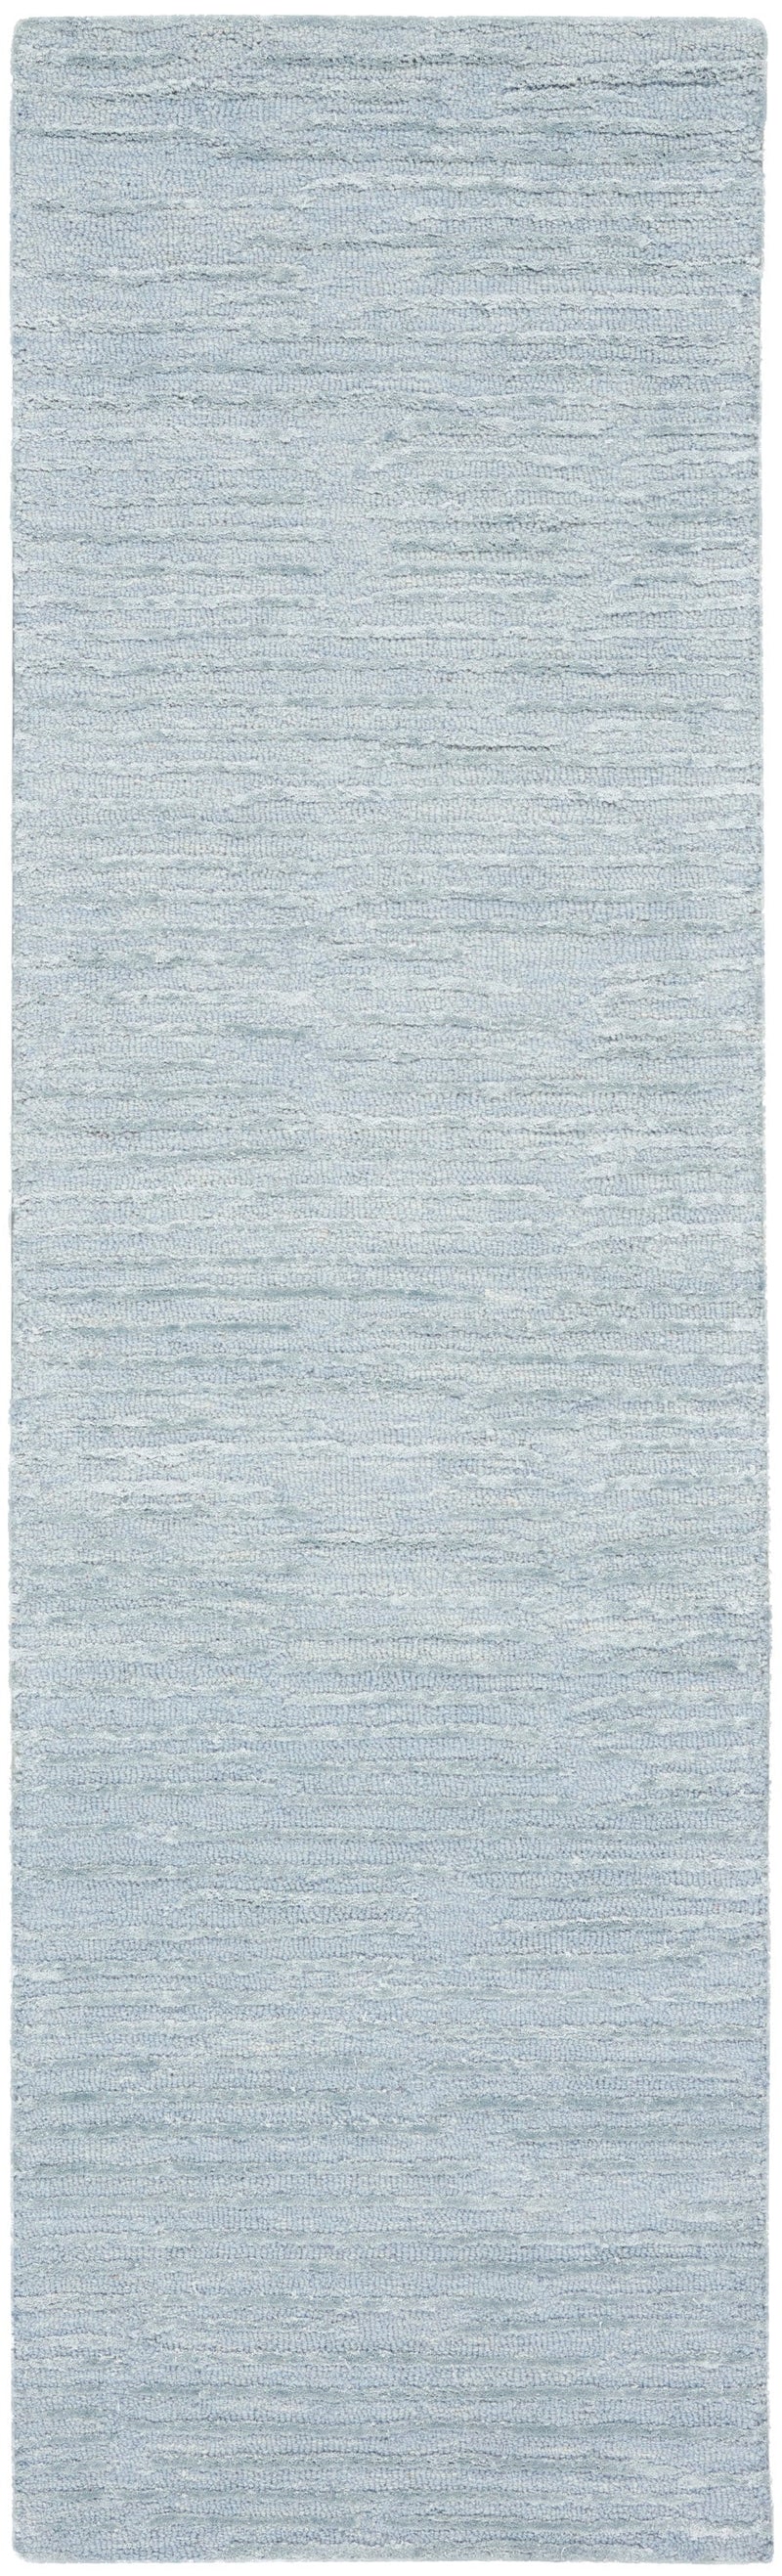 media image for ck010 linear handmade light blue rug by nourison 99446879950 redo 2 298